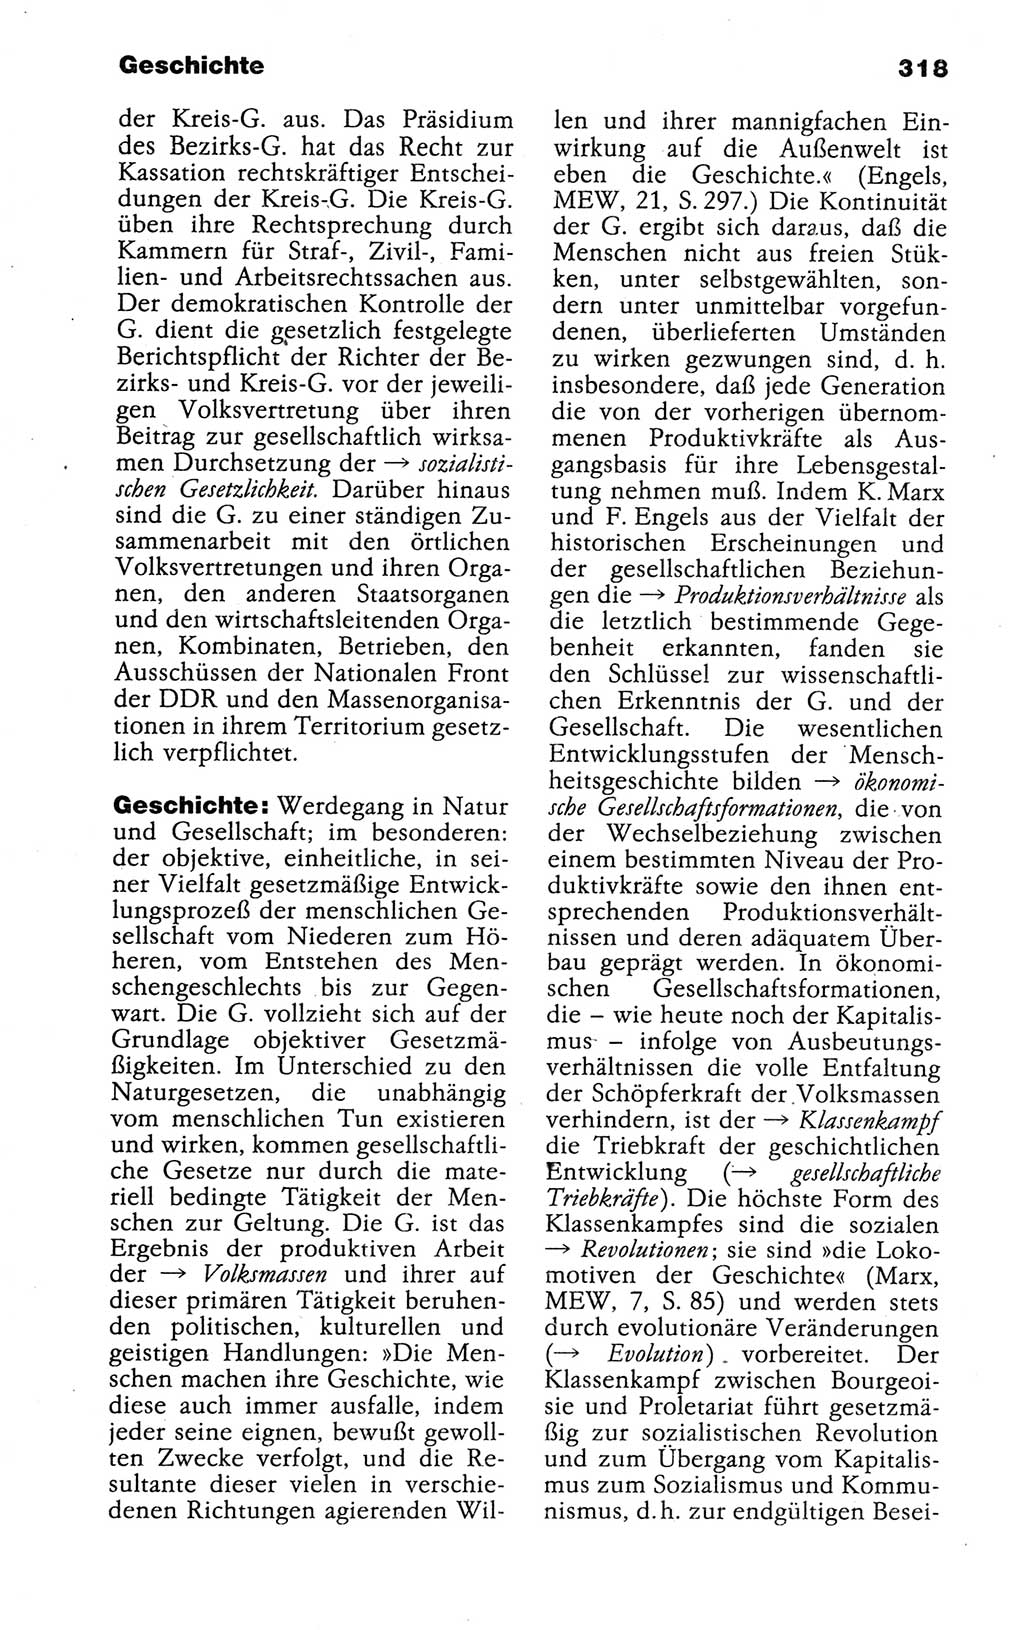 Kleines politisches Wörterbuch [Deutsche Demokratische Republik (DDR)] 1988, Seite 318 (Kl. pol. Wb. DDR 1988, S. 318)